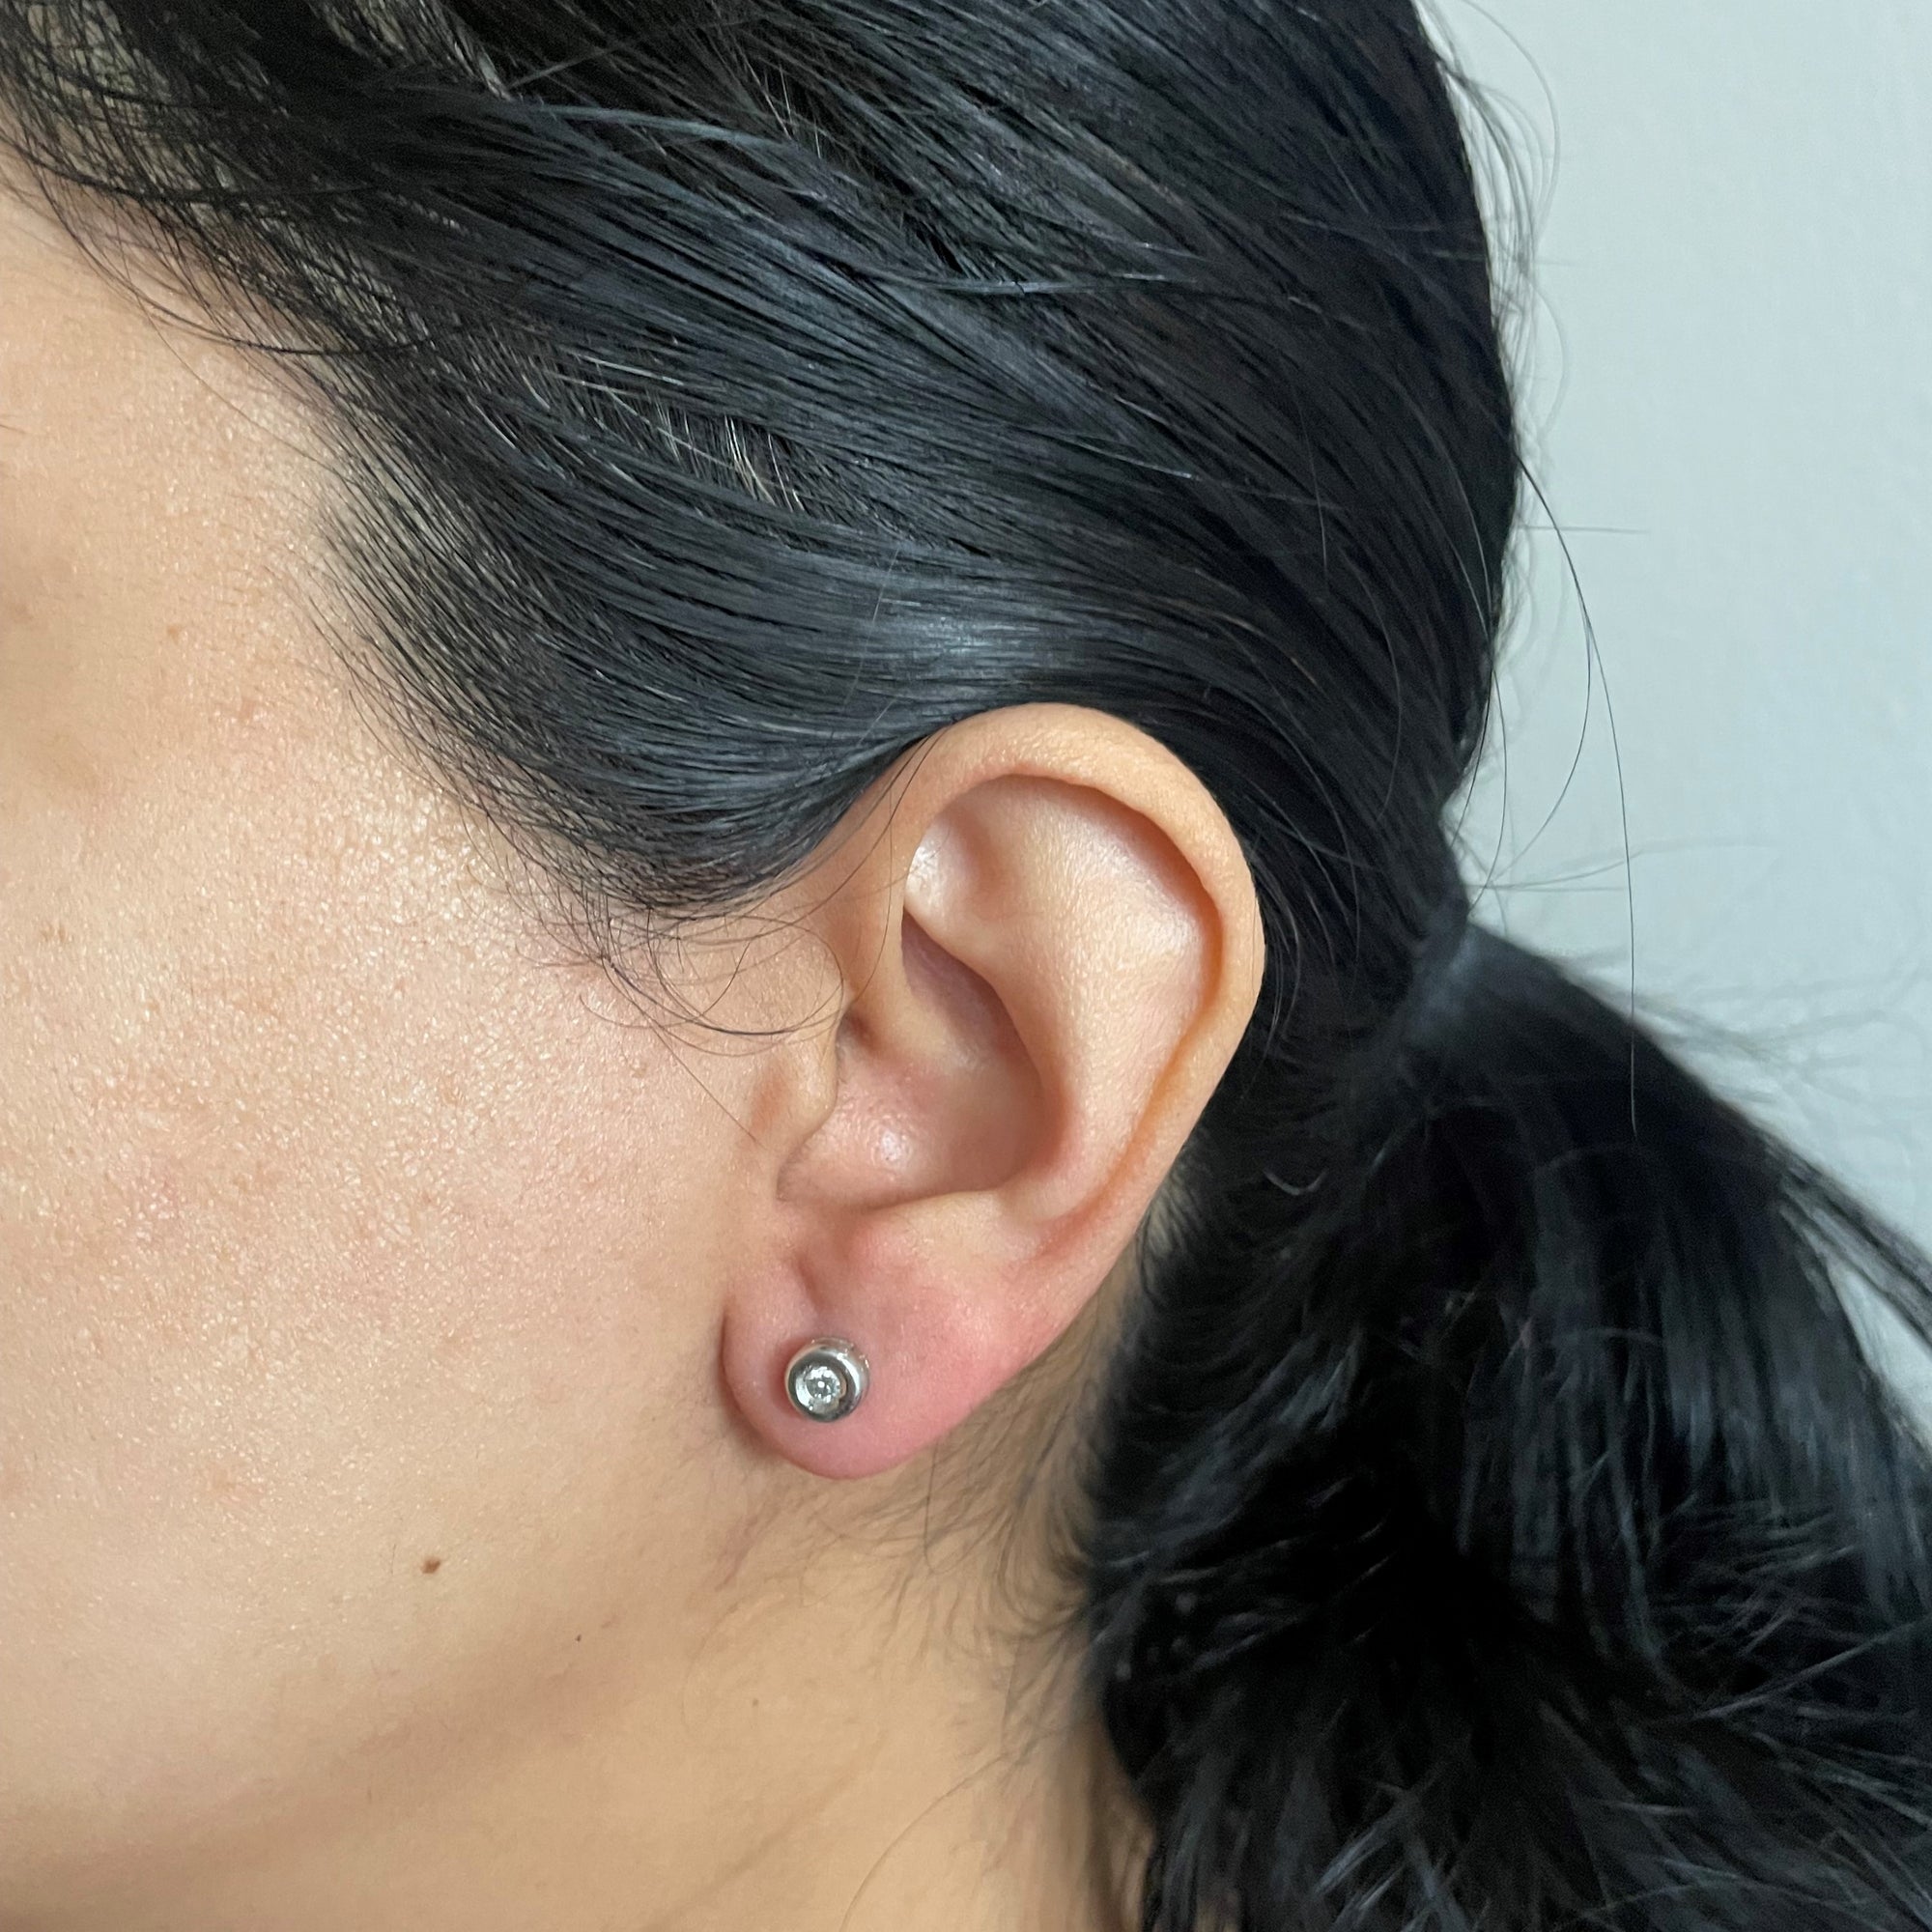 Bezel Set Diamond Stud Earrings | 0.14ctw |